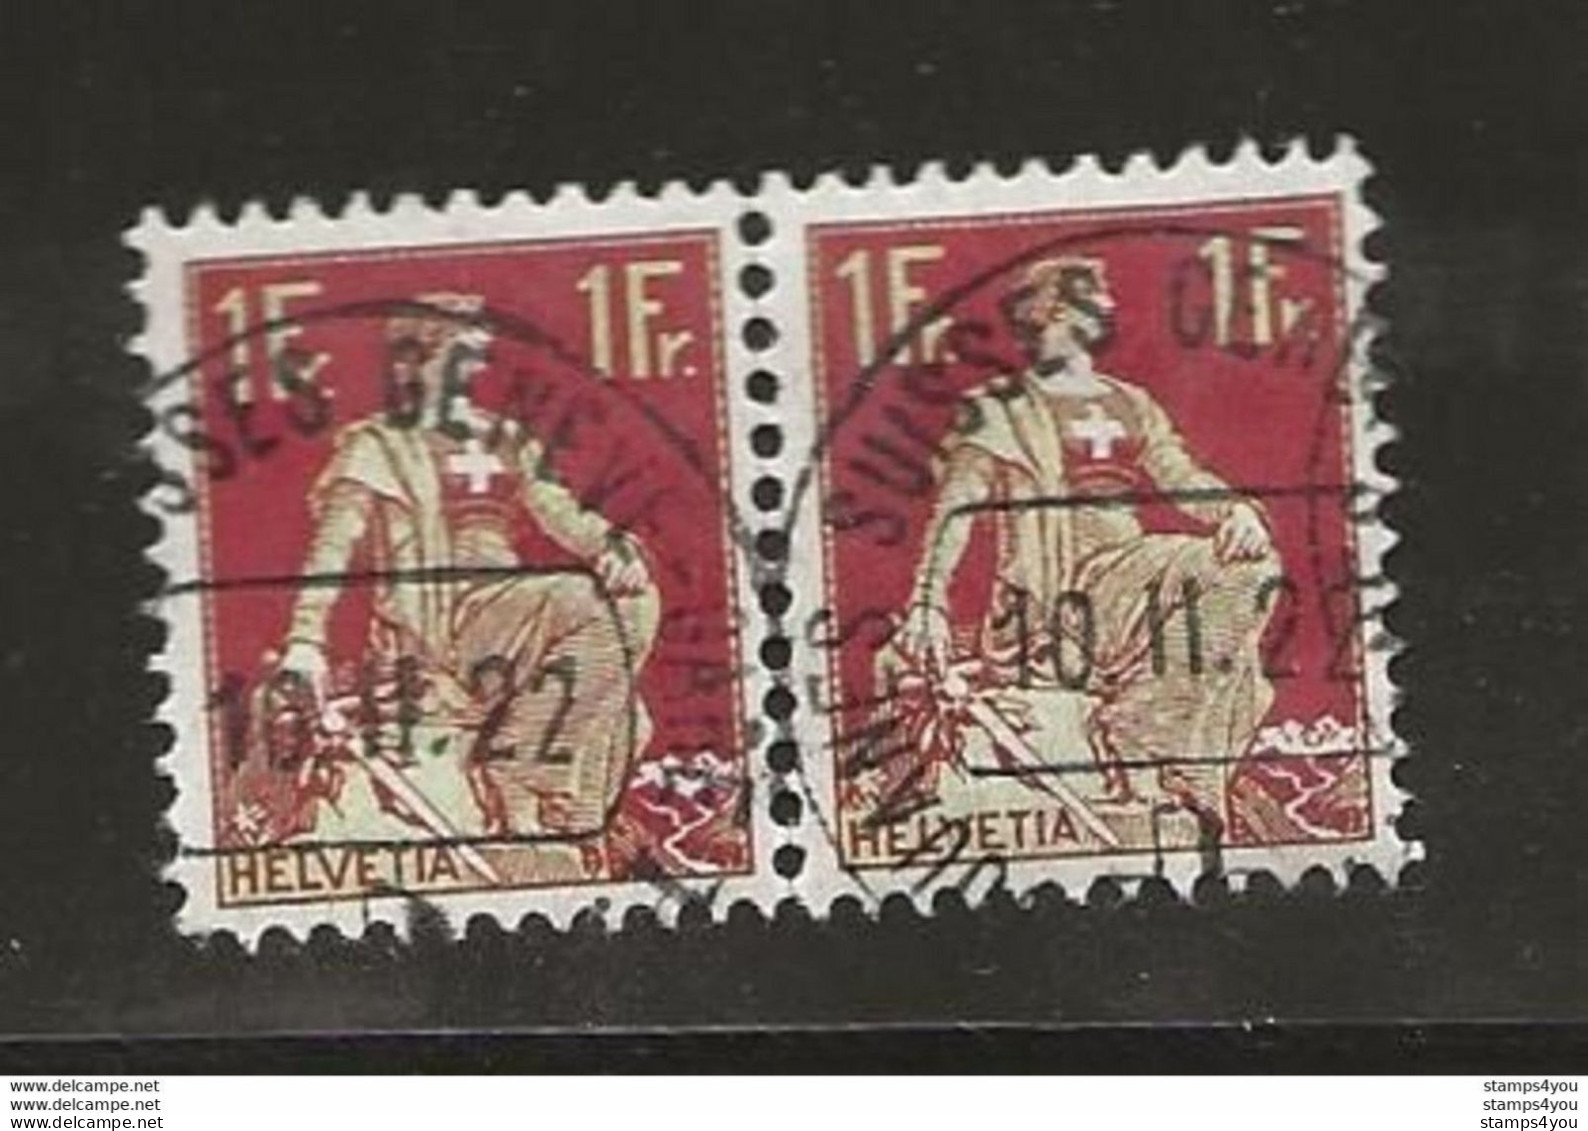 400 - Timbres Avec Cachet Douane Suisse Genève 1922 - Storia Postale